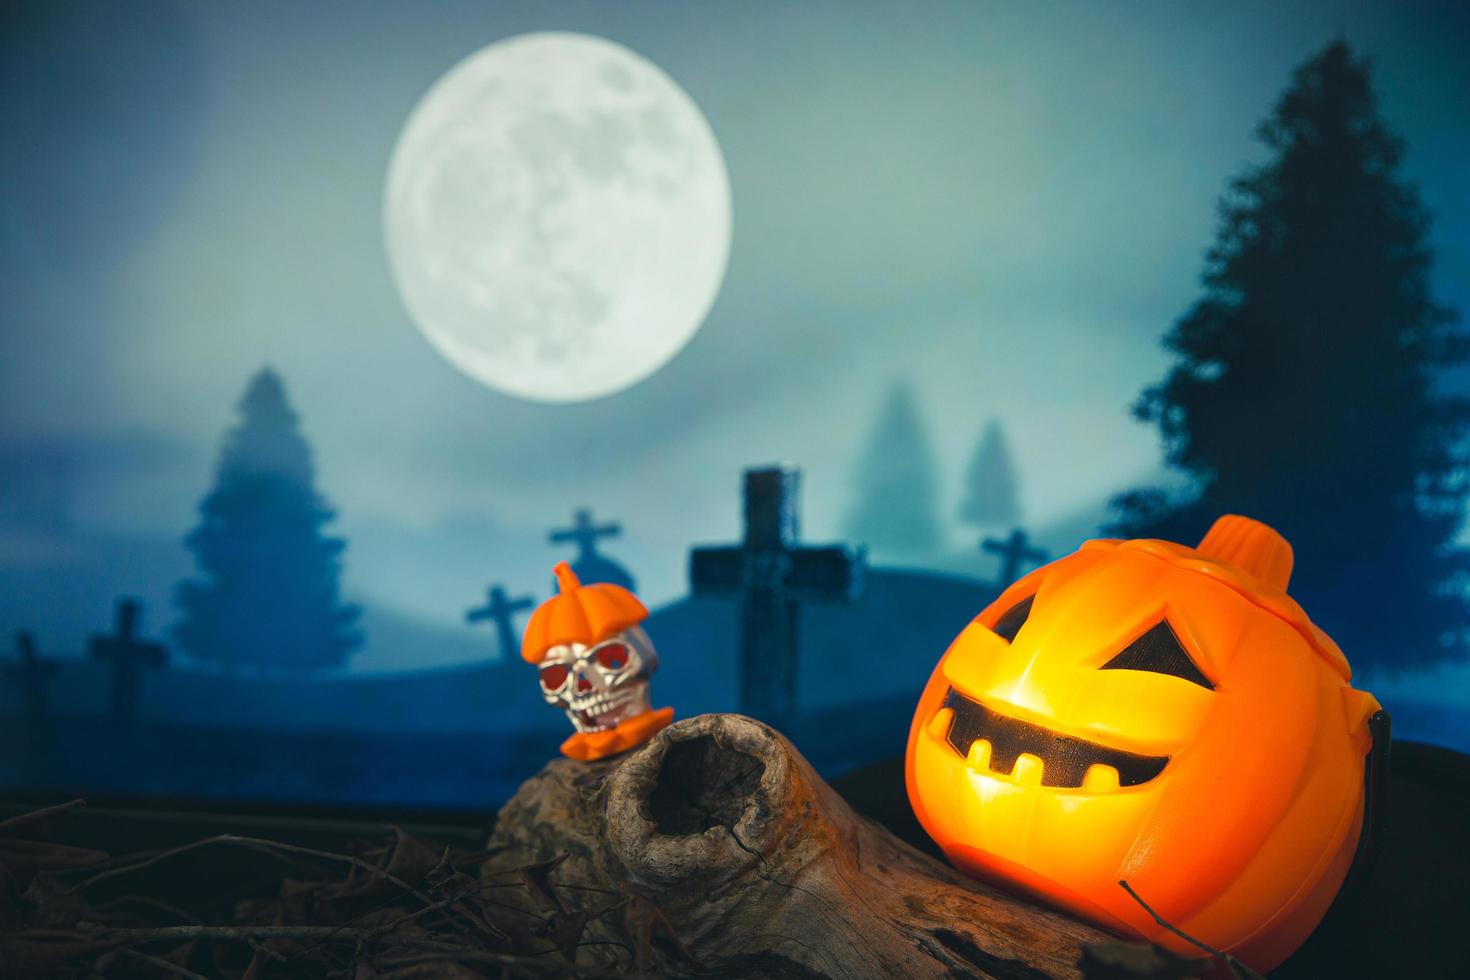 spookachtige begraafplaats met gloed halloween pompoen foto